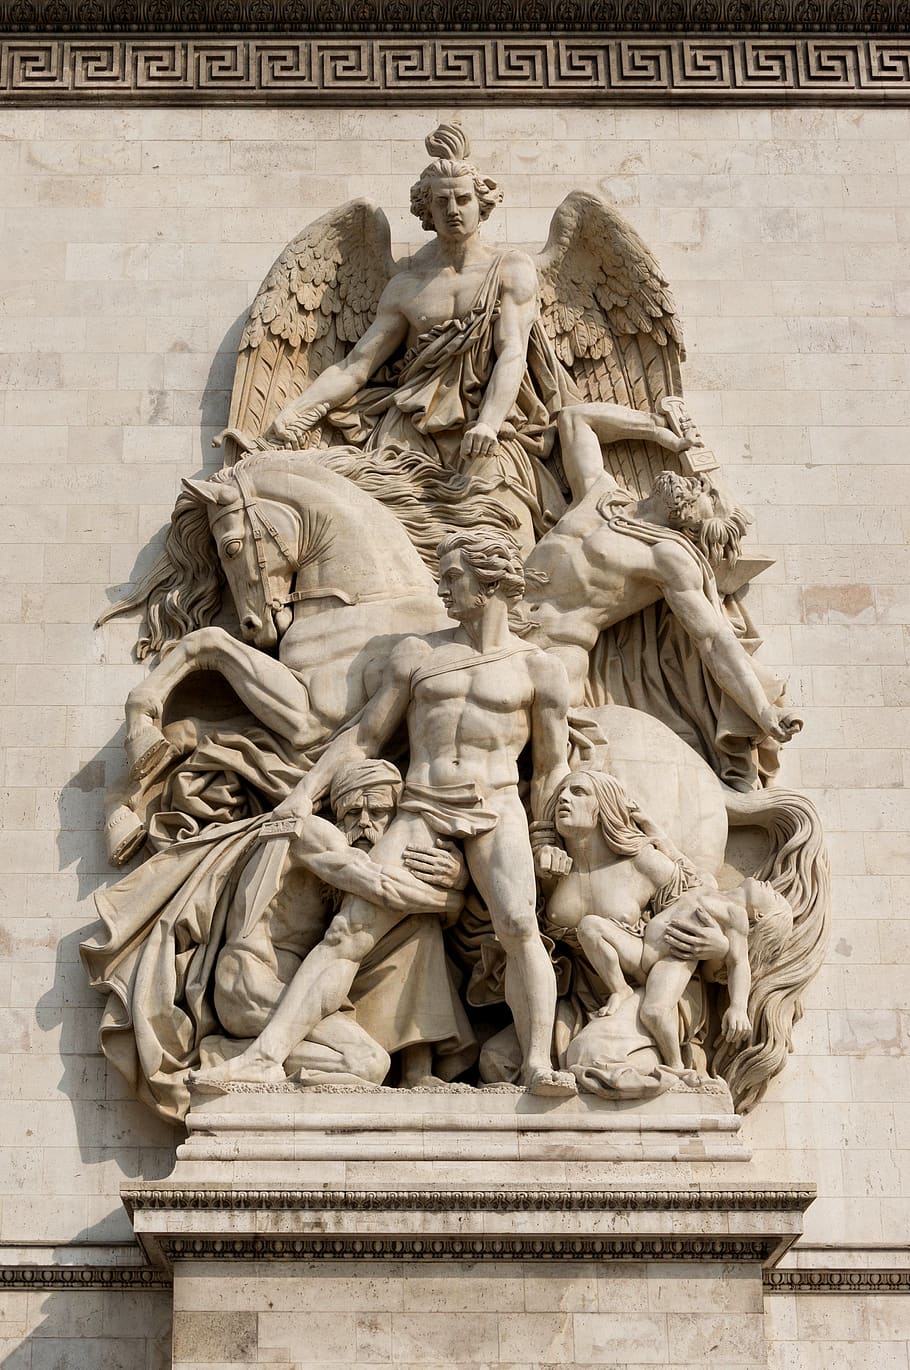 arc de triomphe, paris, relief, sculpture, monument, famous, triumph, neoclassical, attraction, building